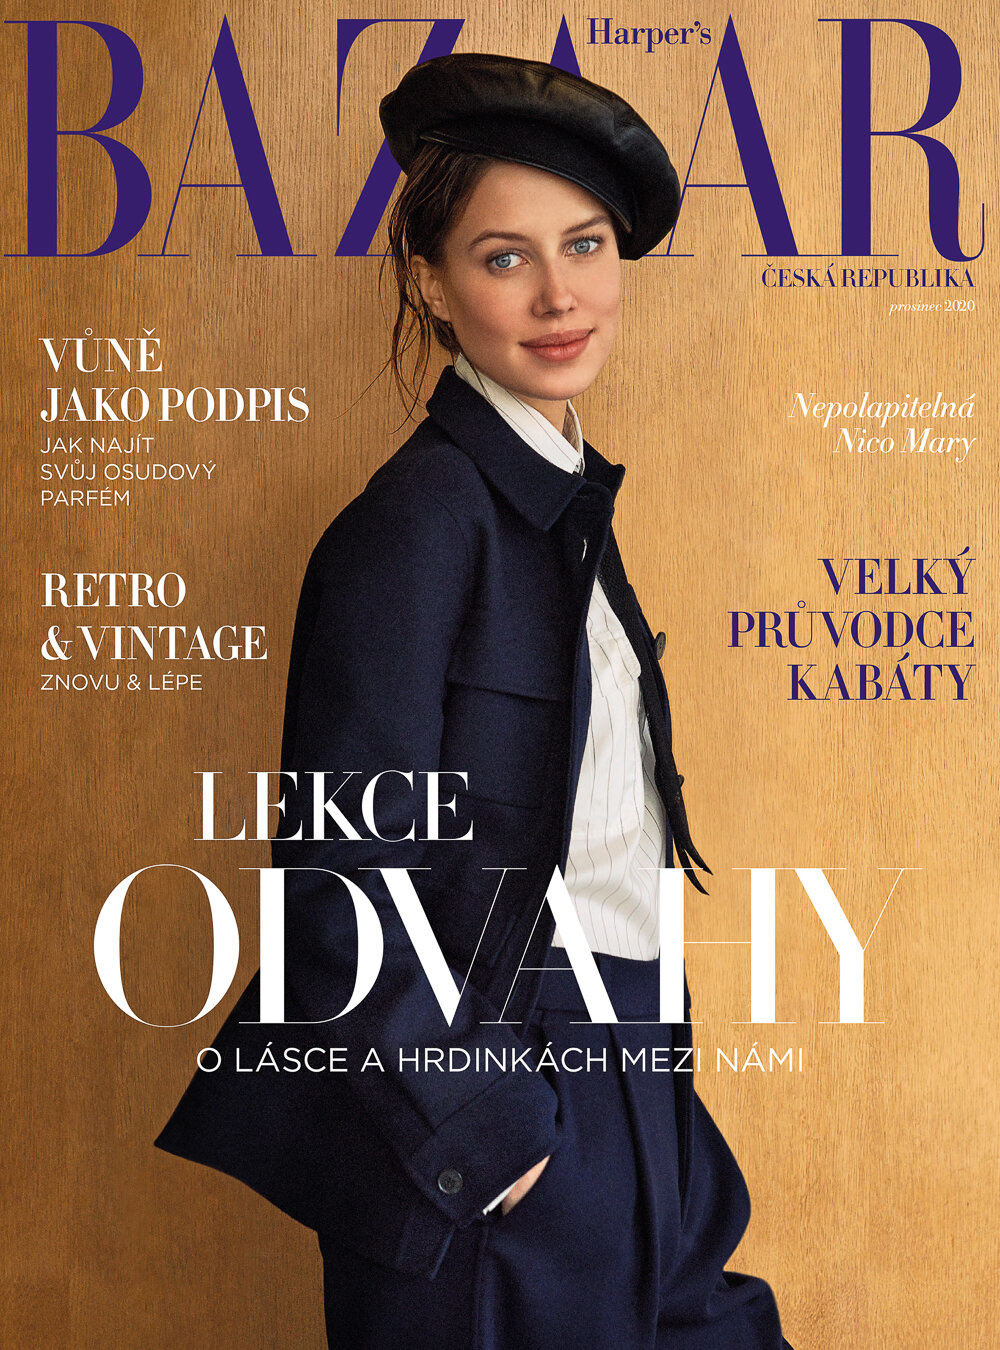 Harper's Bazaar Czech December 2020 Cover Story Editorial